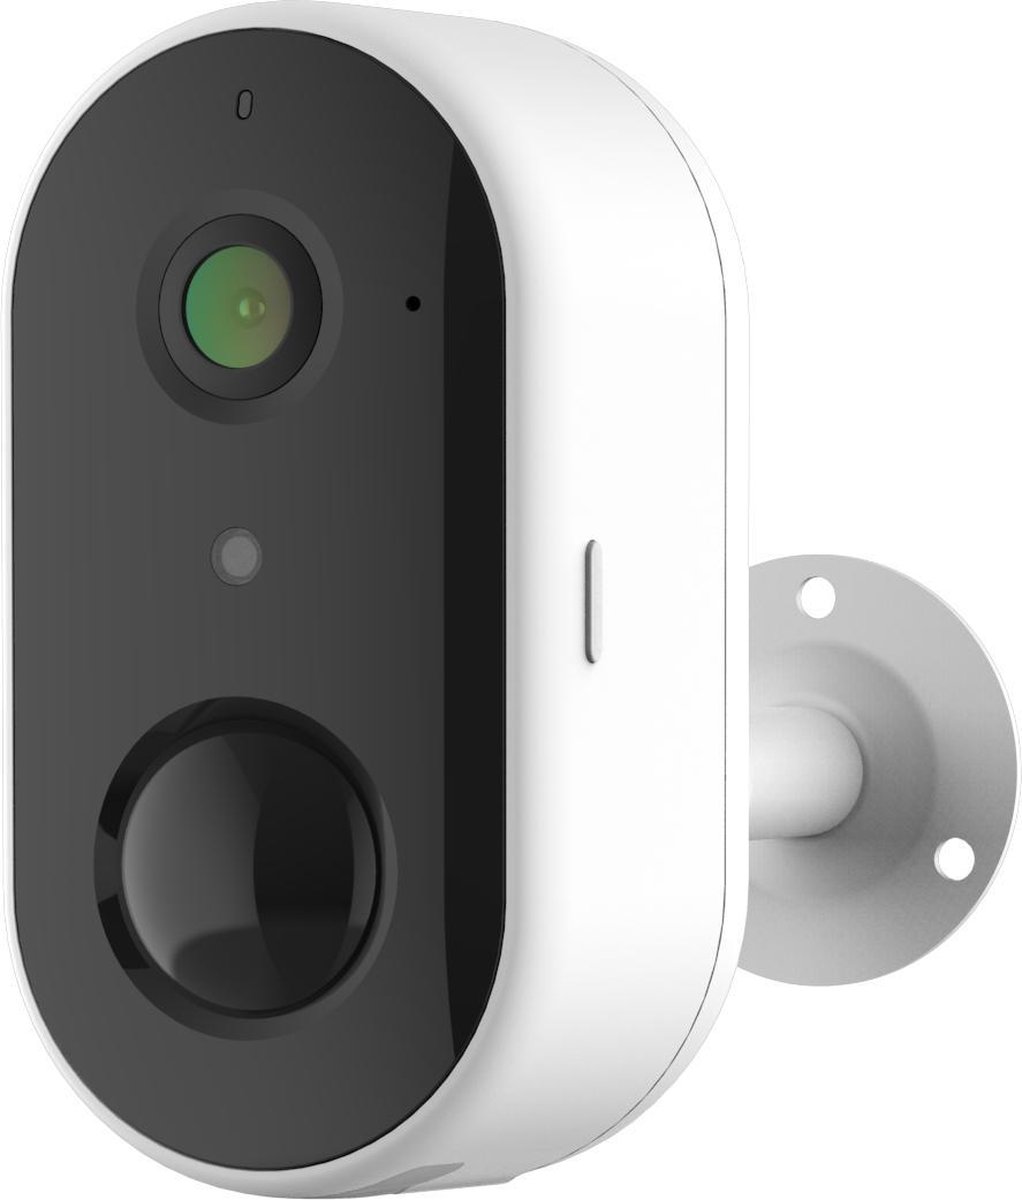 Smartlife & Tuya - Beveiligingscamera voor buiten - Draadloos door middel van oplaadbare batterij - 1080p Full HD Beeldresolutie - Wi-Fi